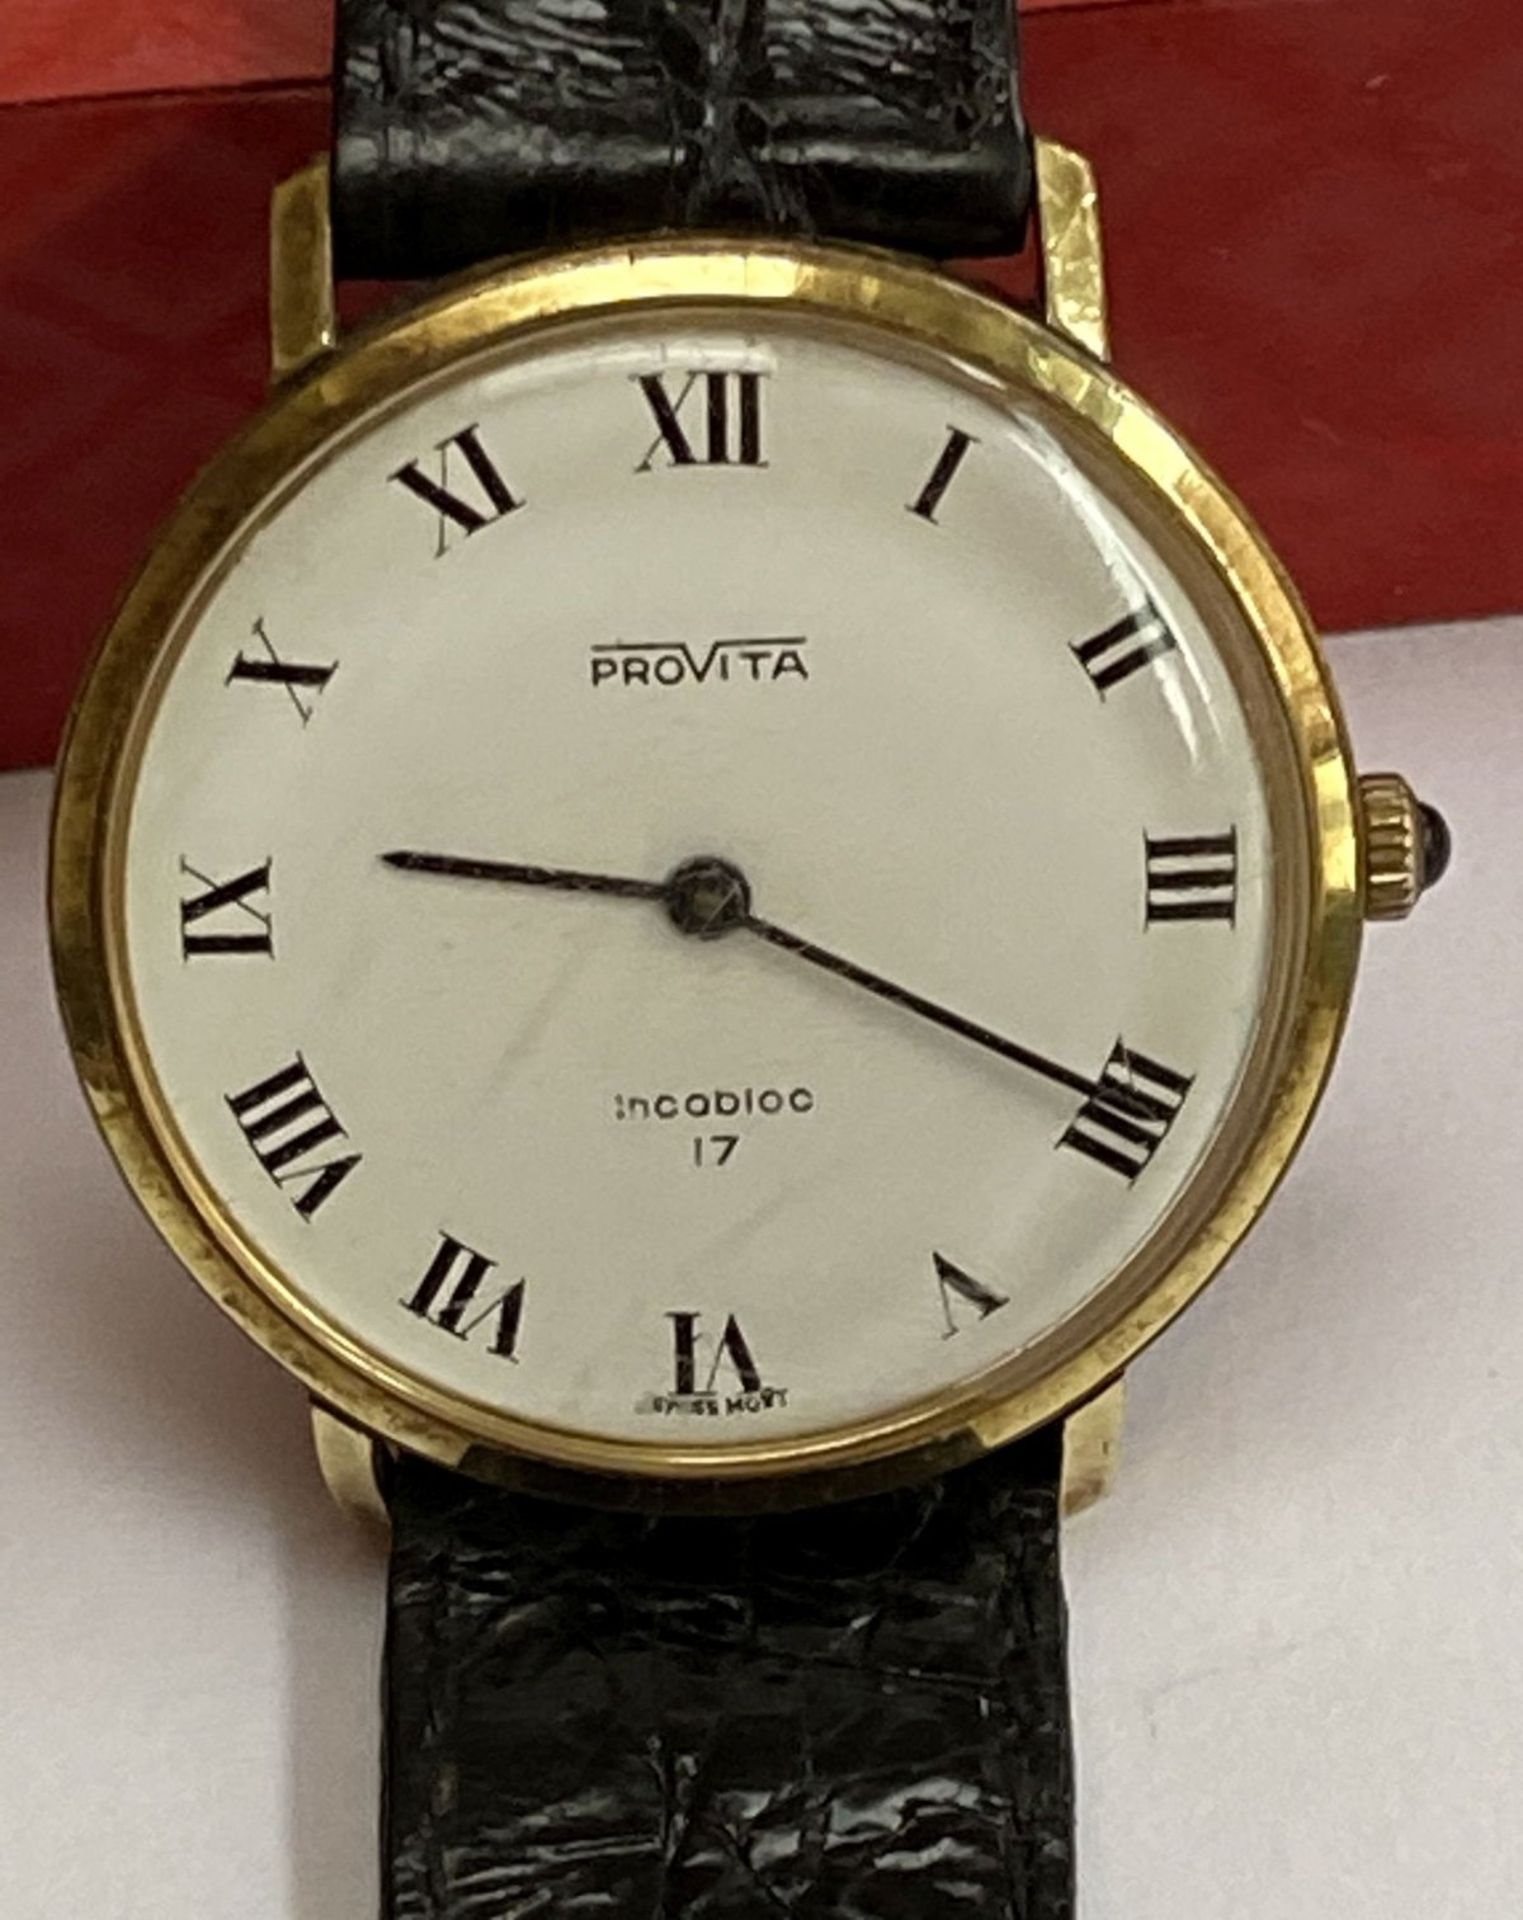 Vintage Herrenarmbanduhr "Provita" Incabloc 17, flache Form, Gehäuse vergoldet, lässt sich nicht - Image 3 of 6